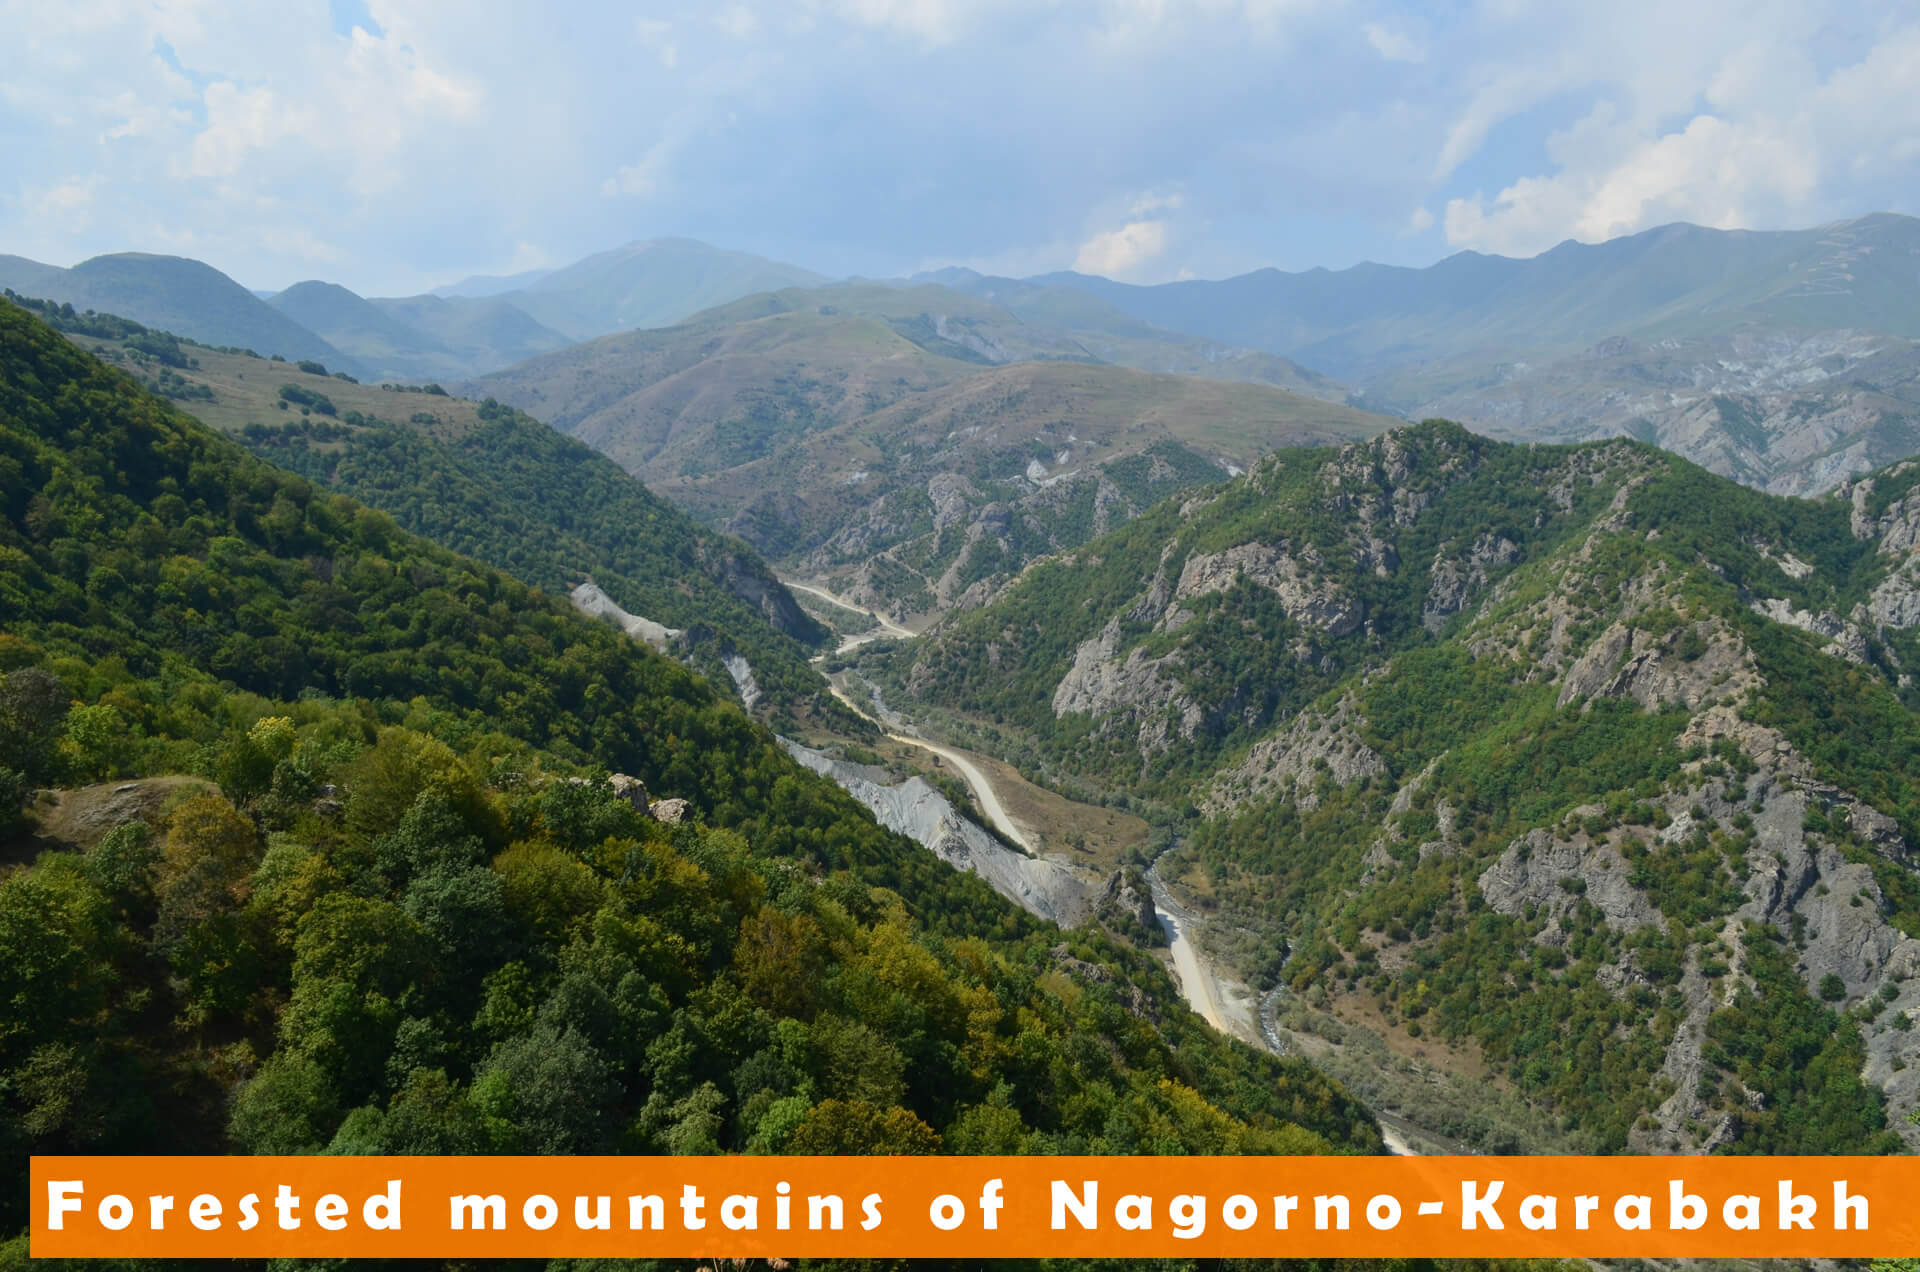 Montagnes boisees de Haut Karabakh